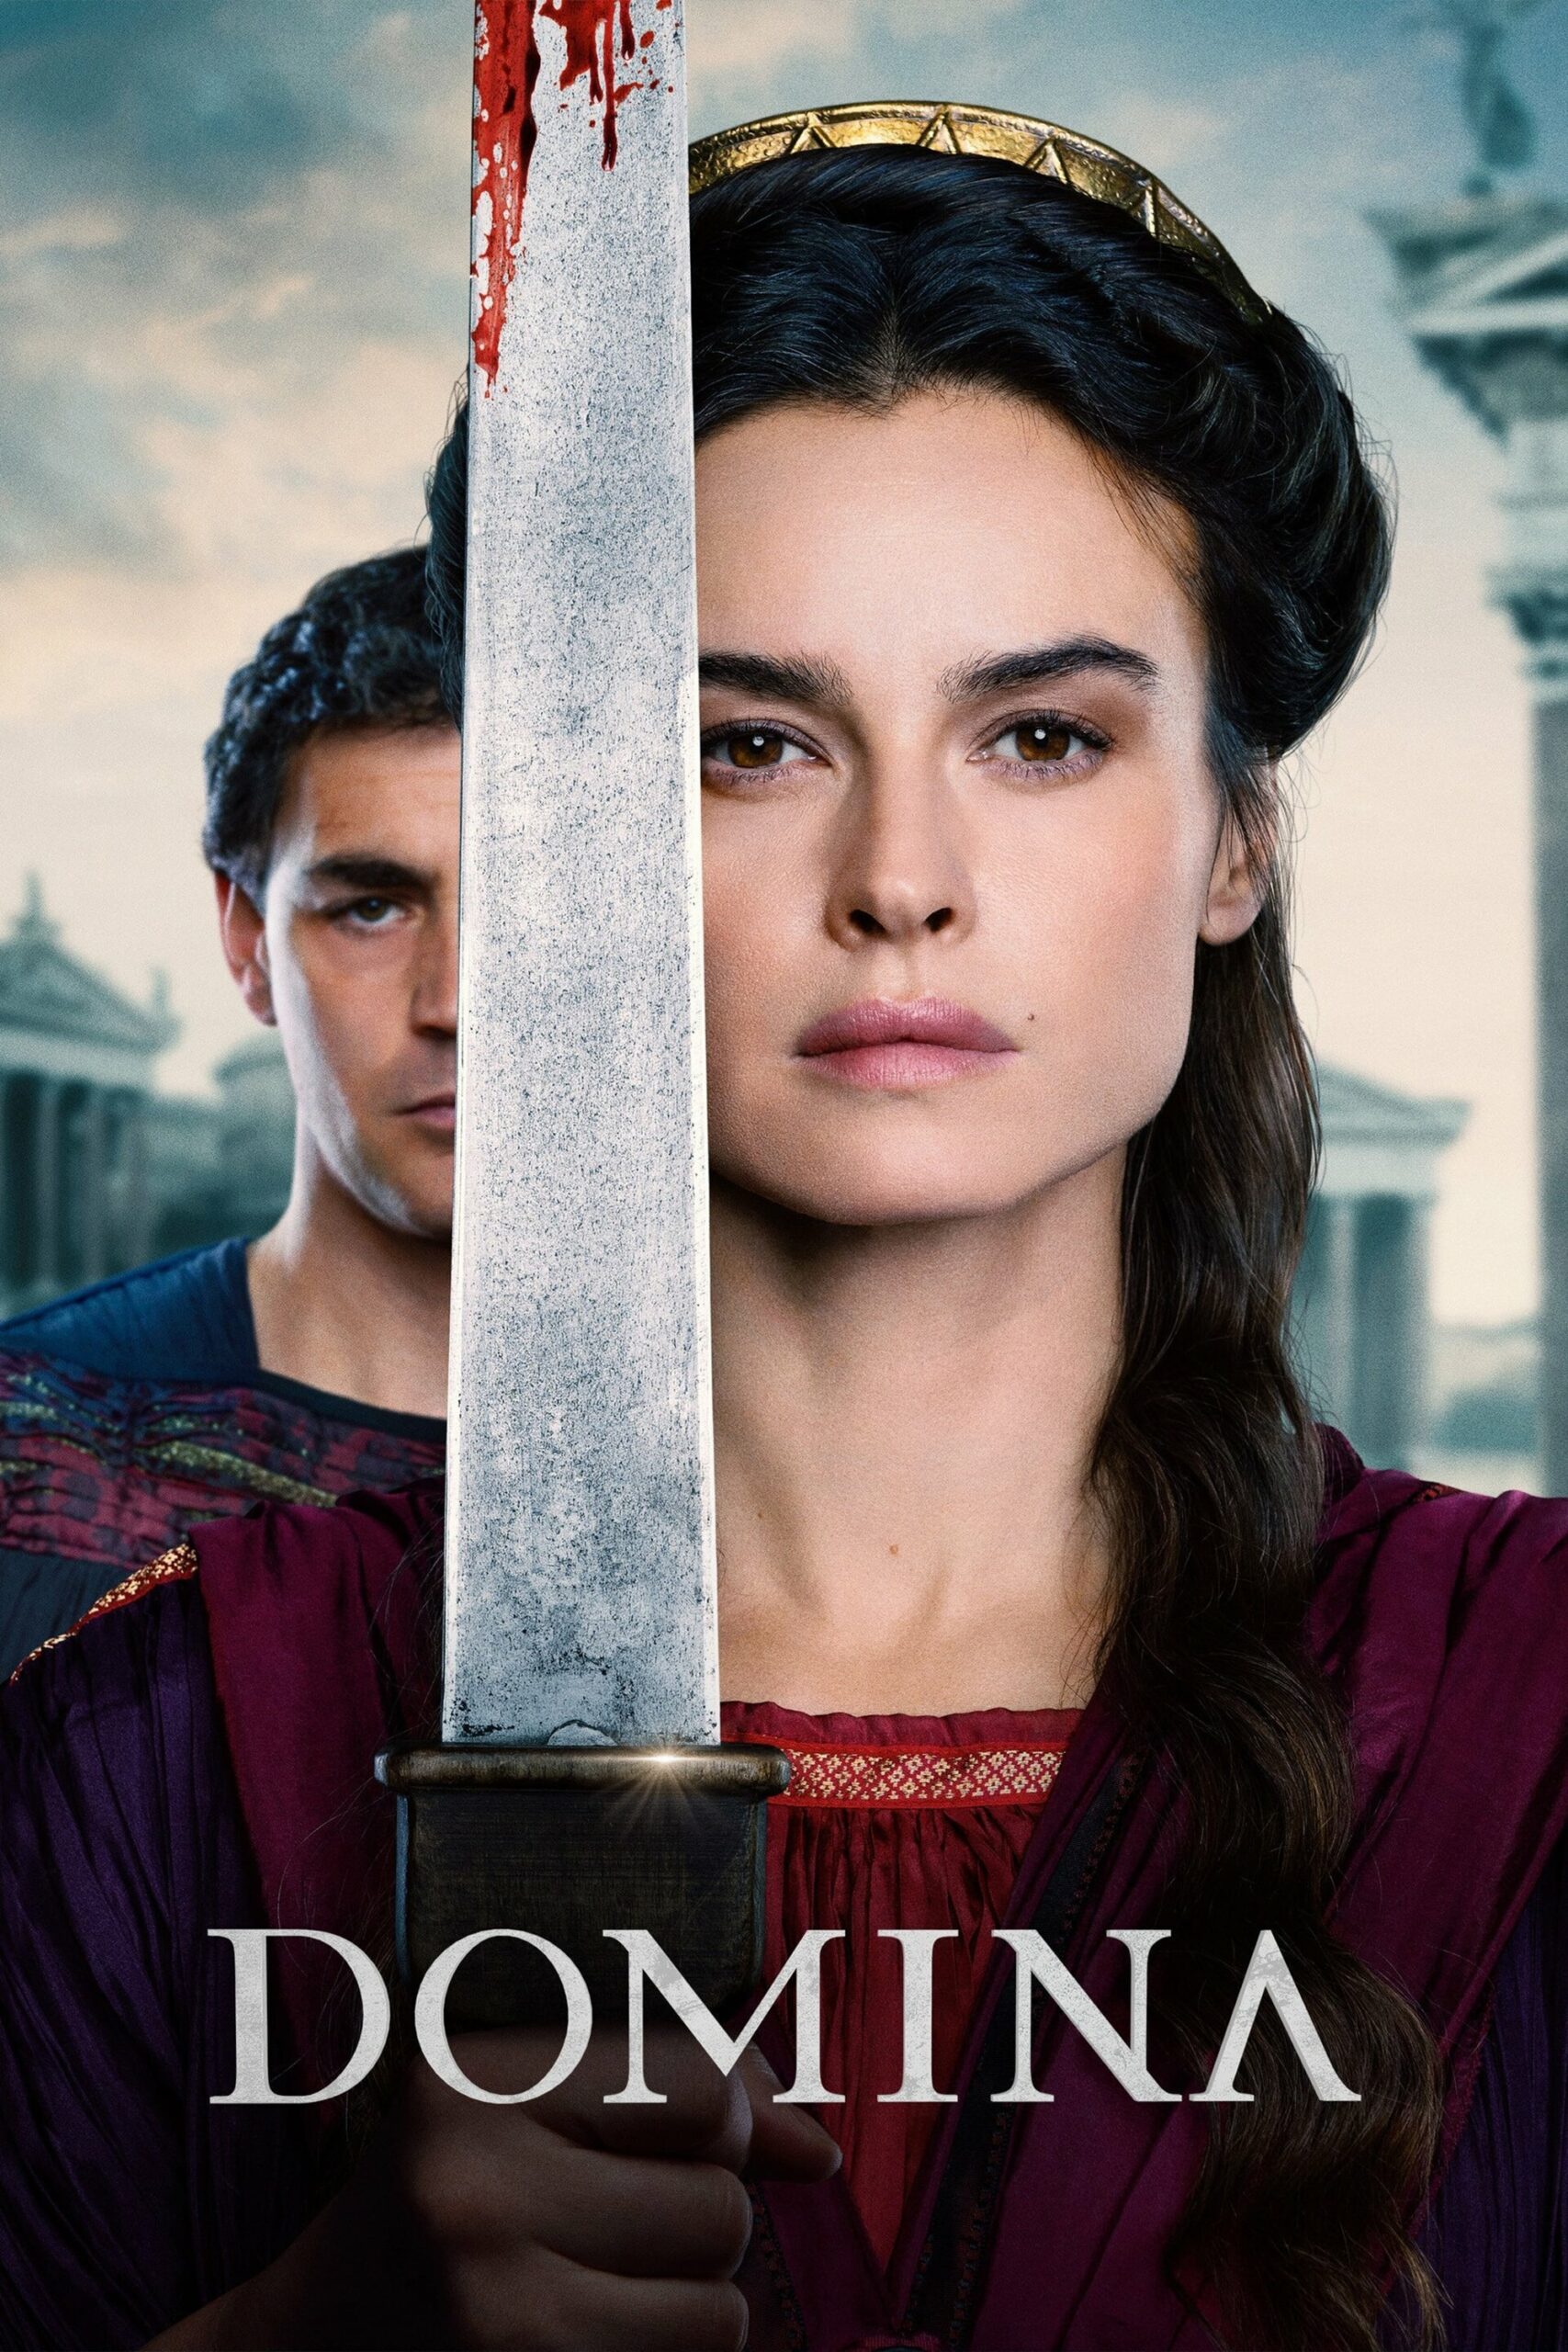 Plakát pro film “Domina”